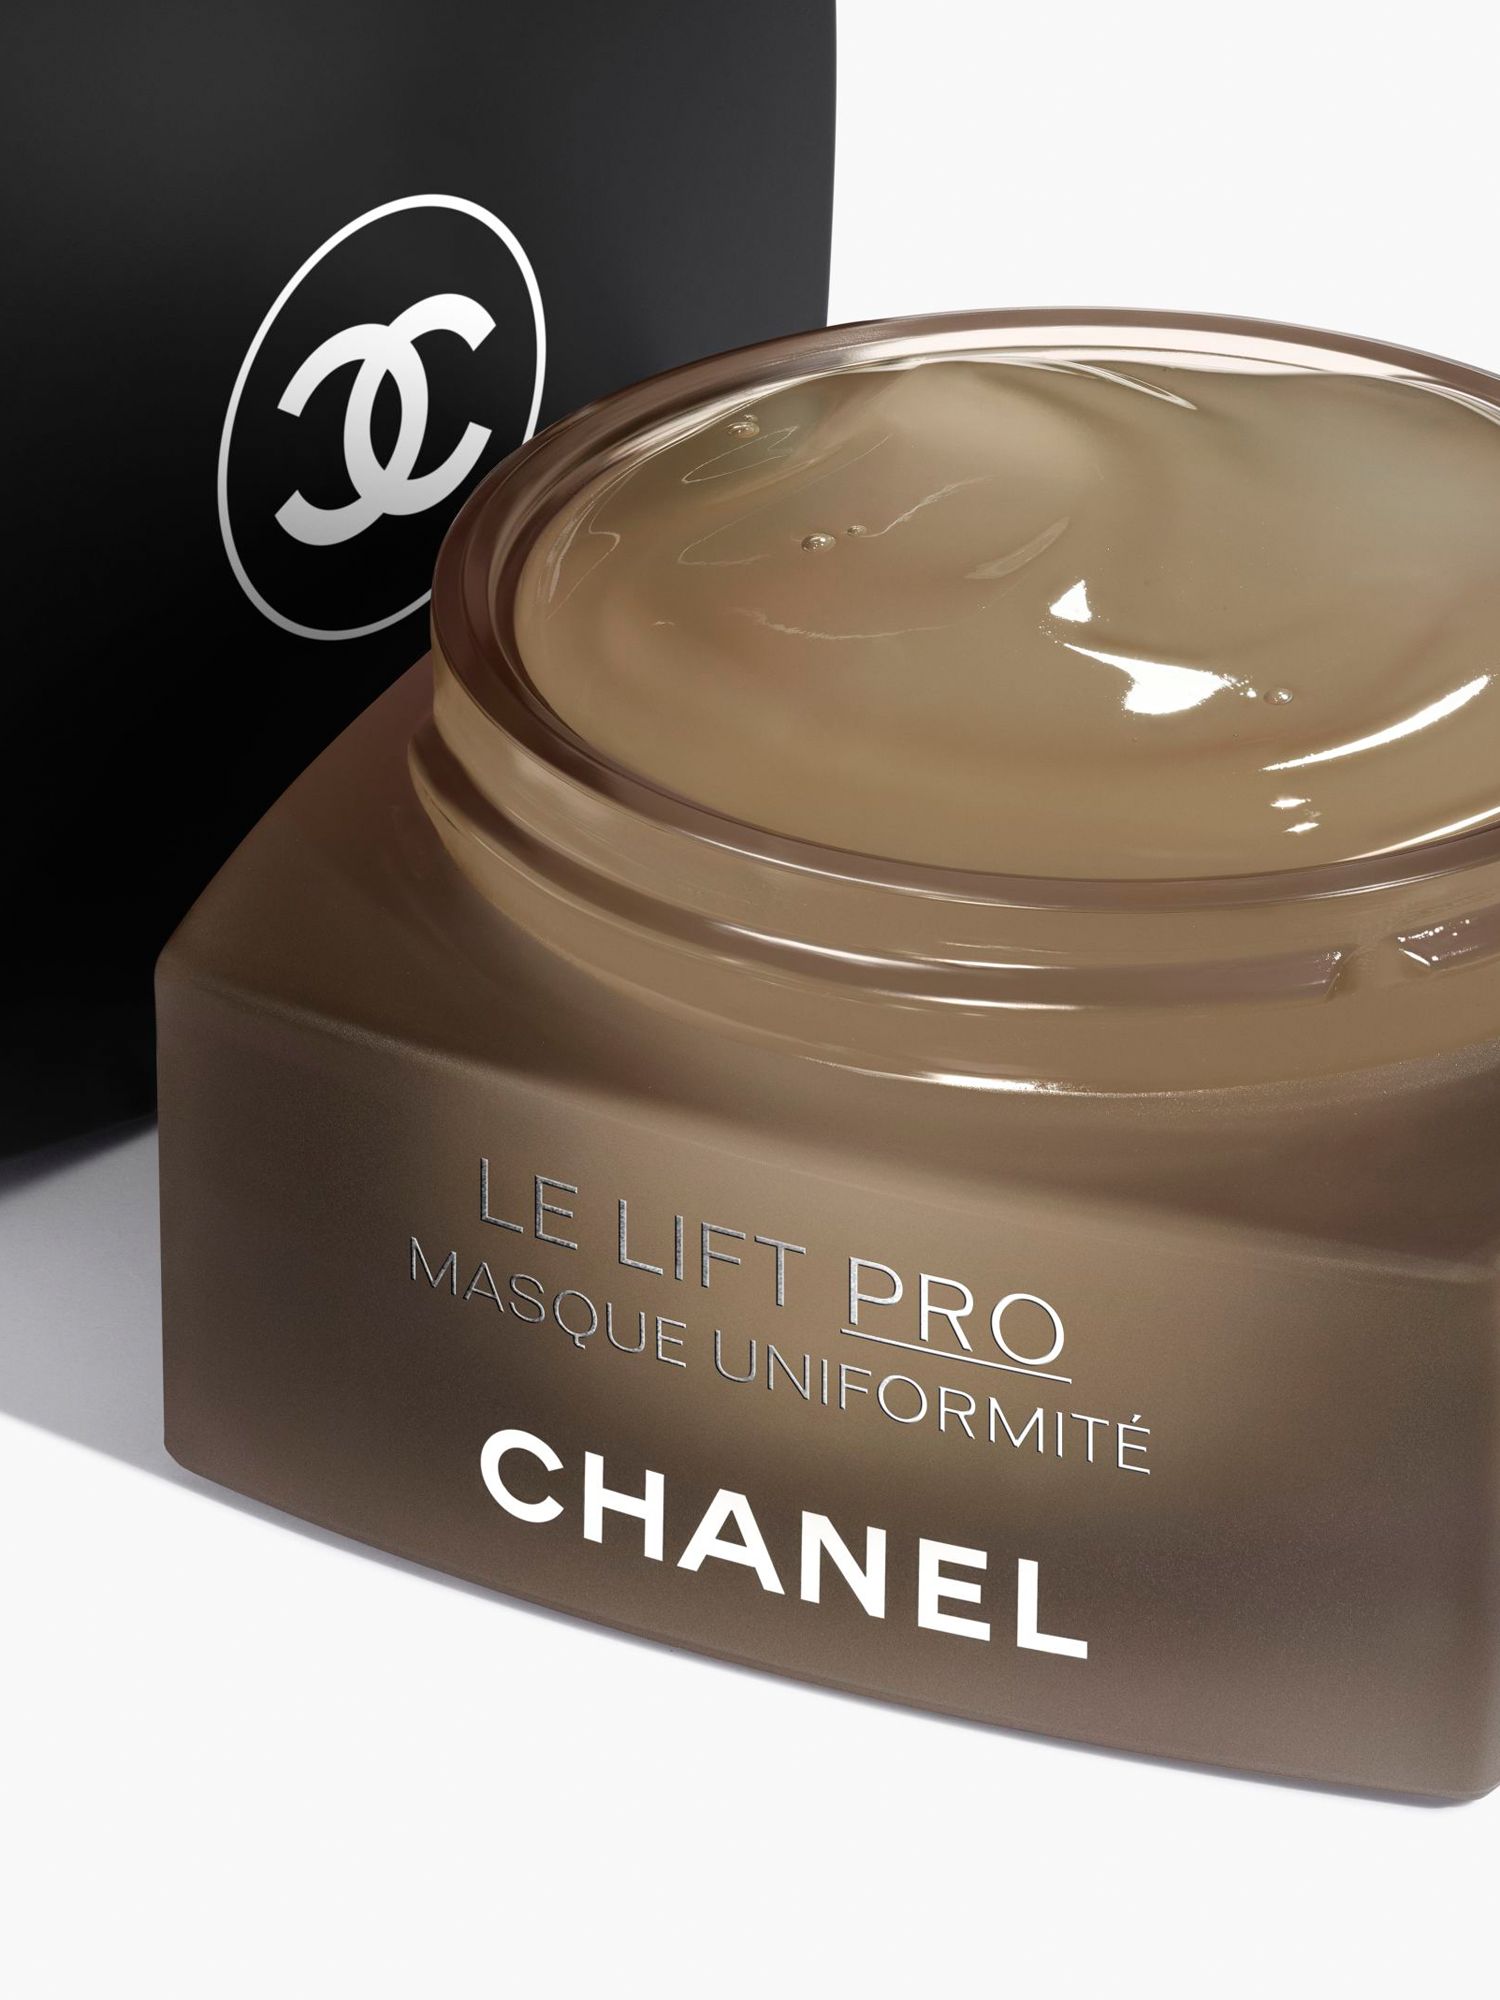 CHANEL Le Lift Pro Masque Uniformité Corrects - Redefines - Evens Jar, 50g  at John Lewis & Partners